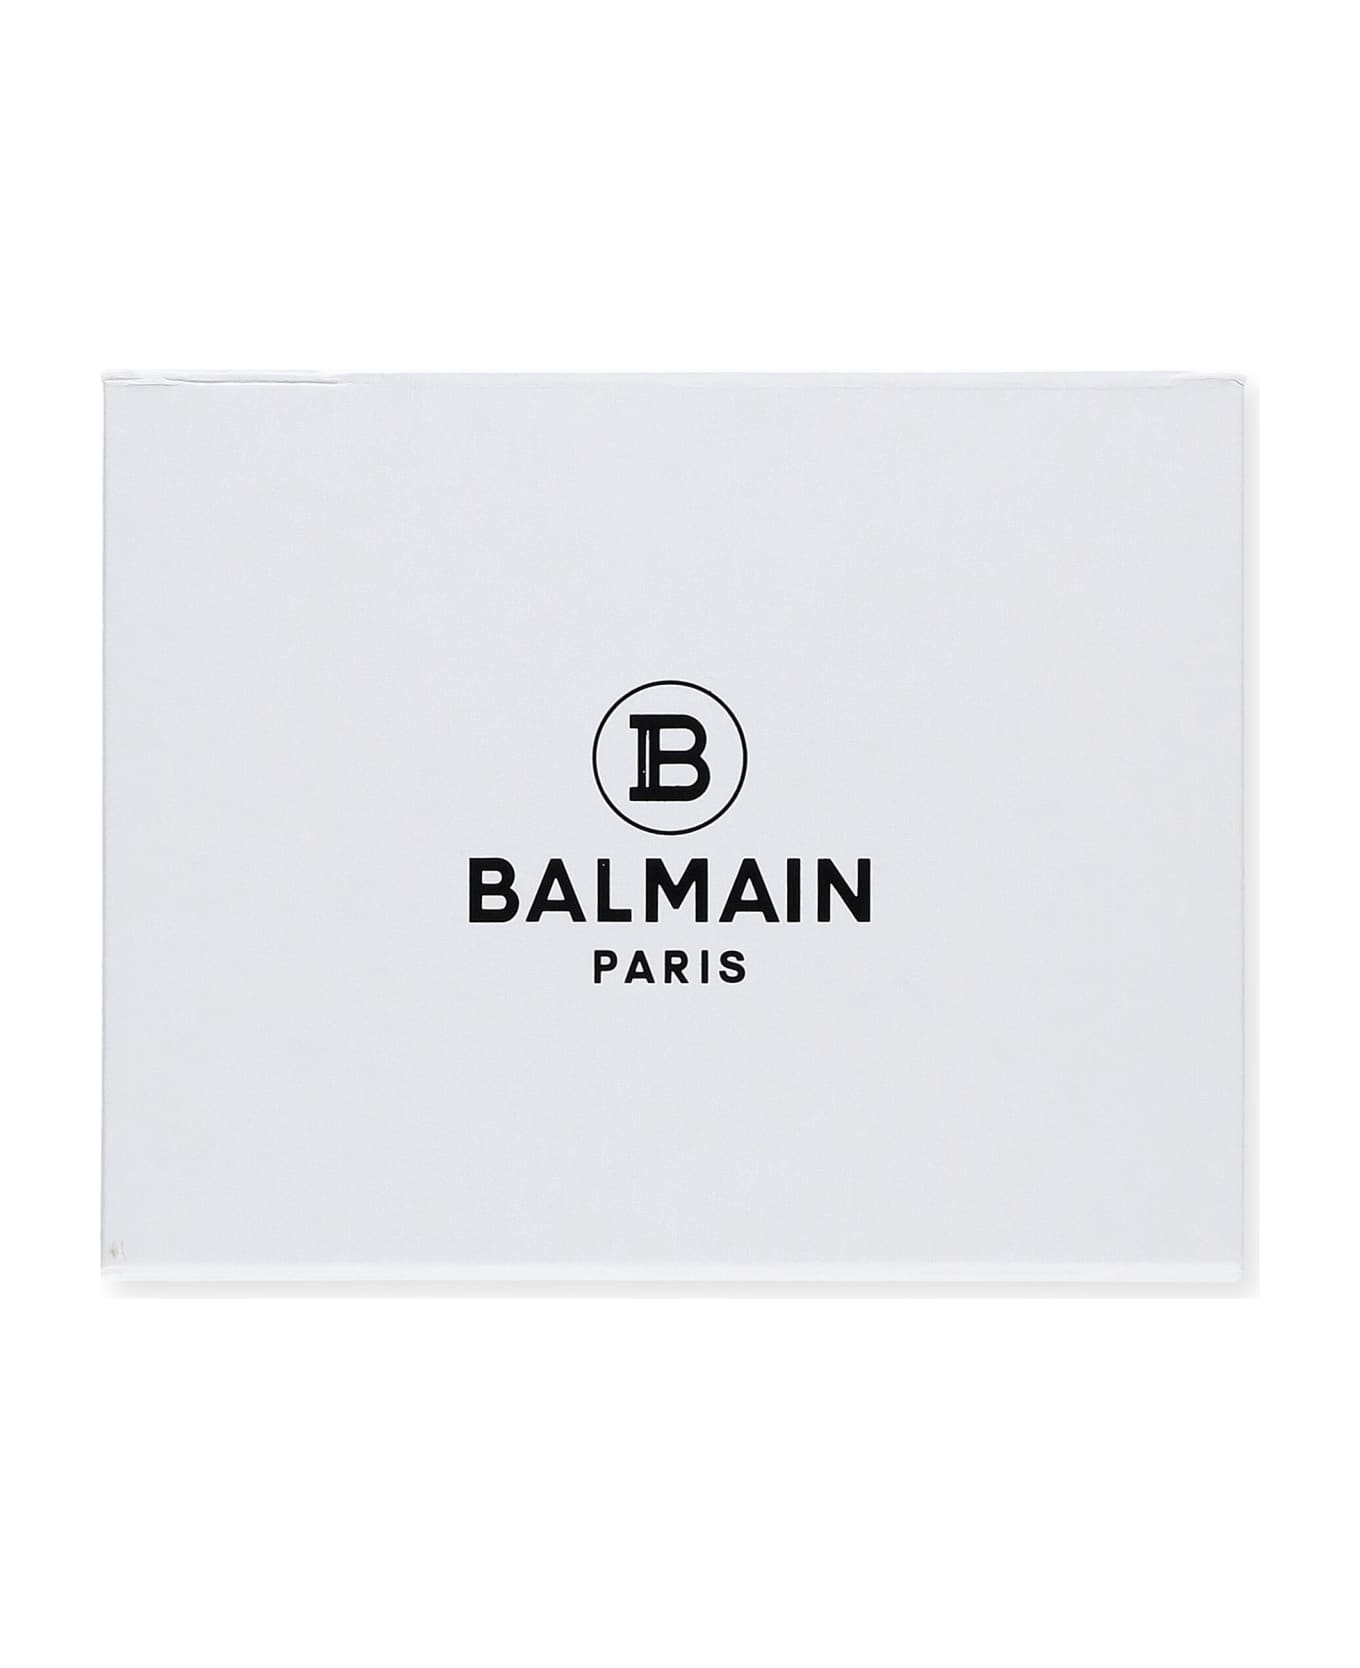 Balmain Set With Logo - White